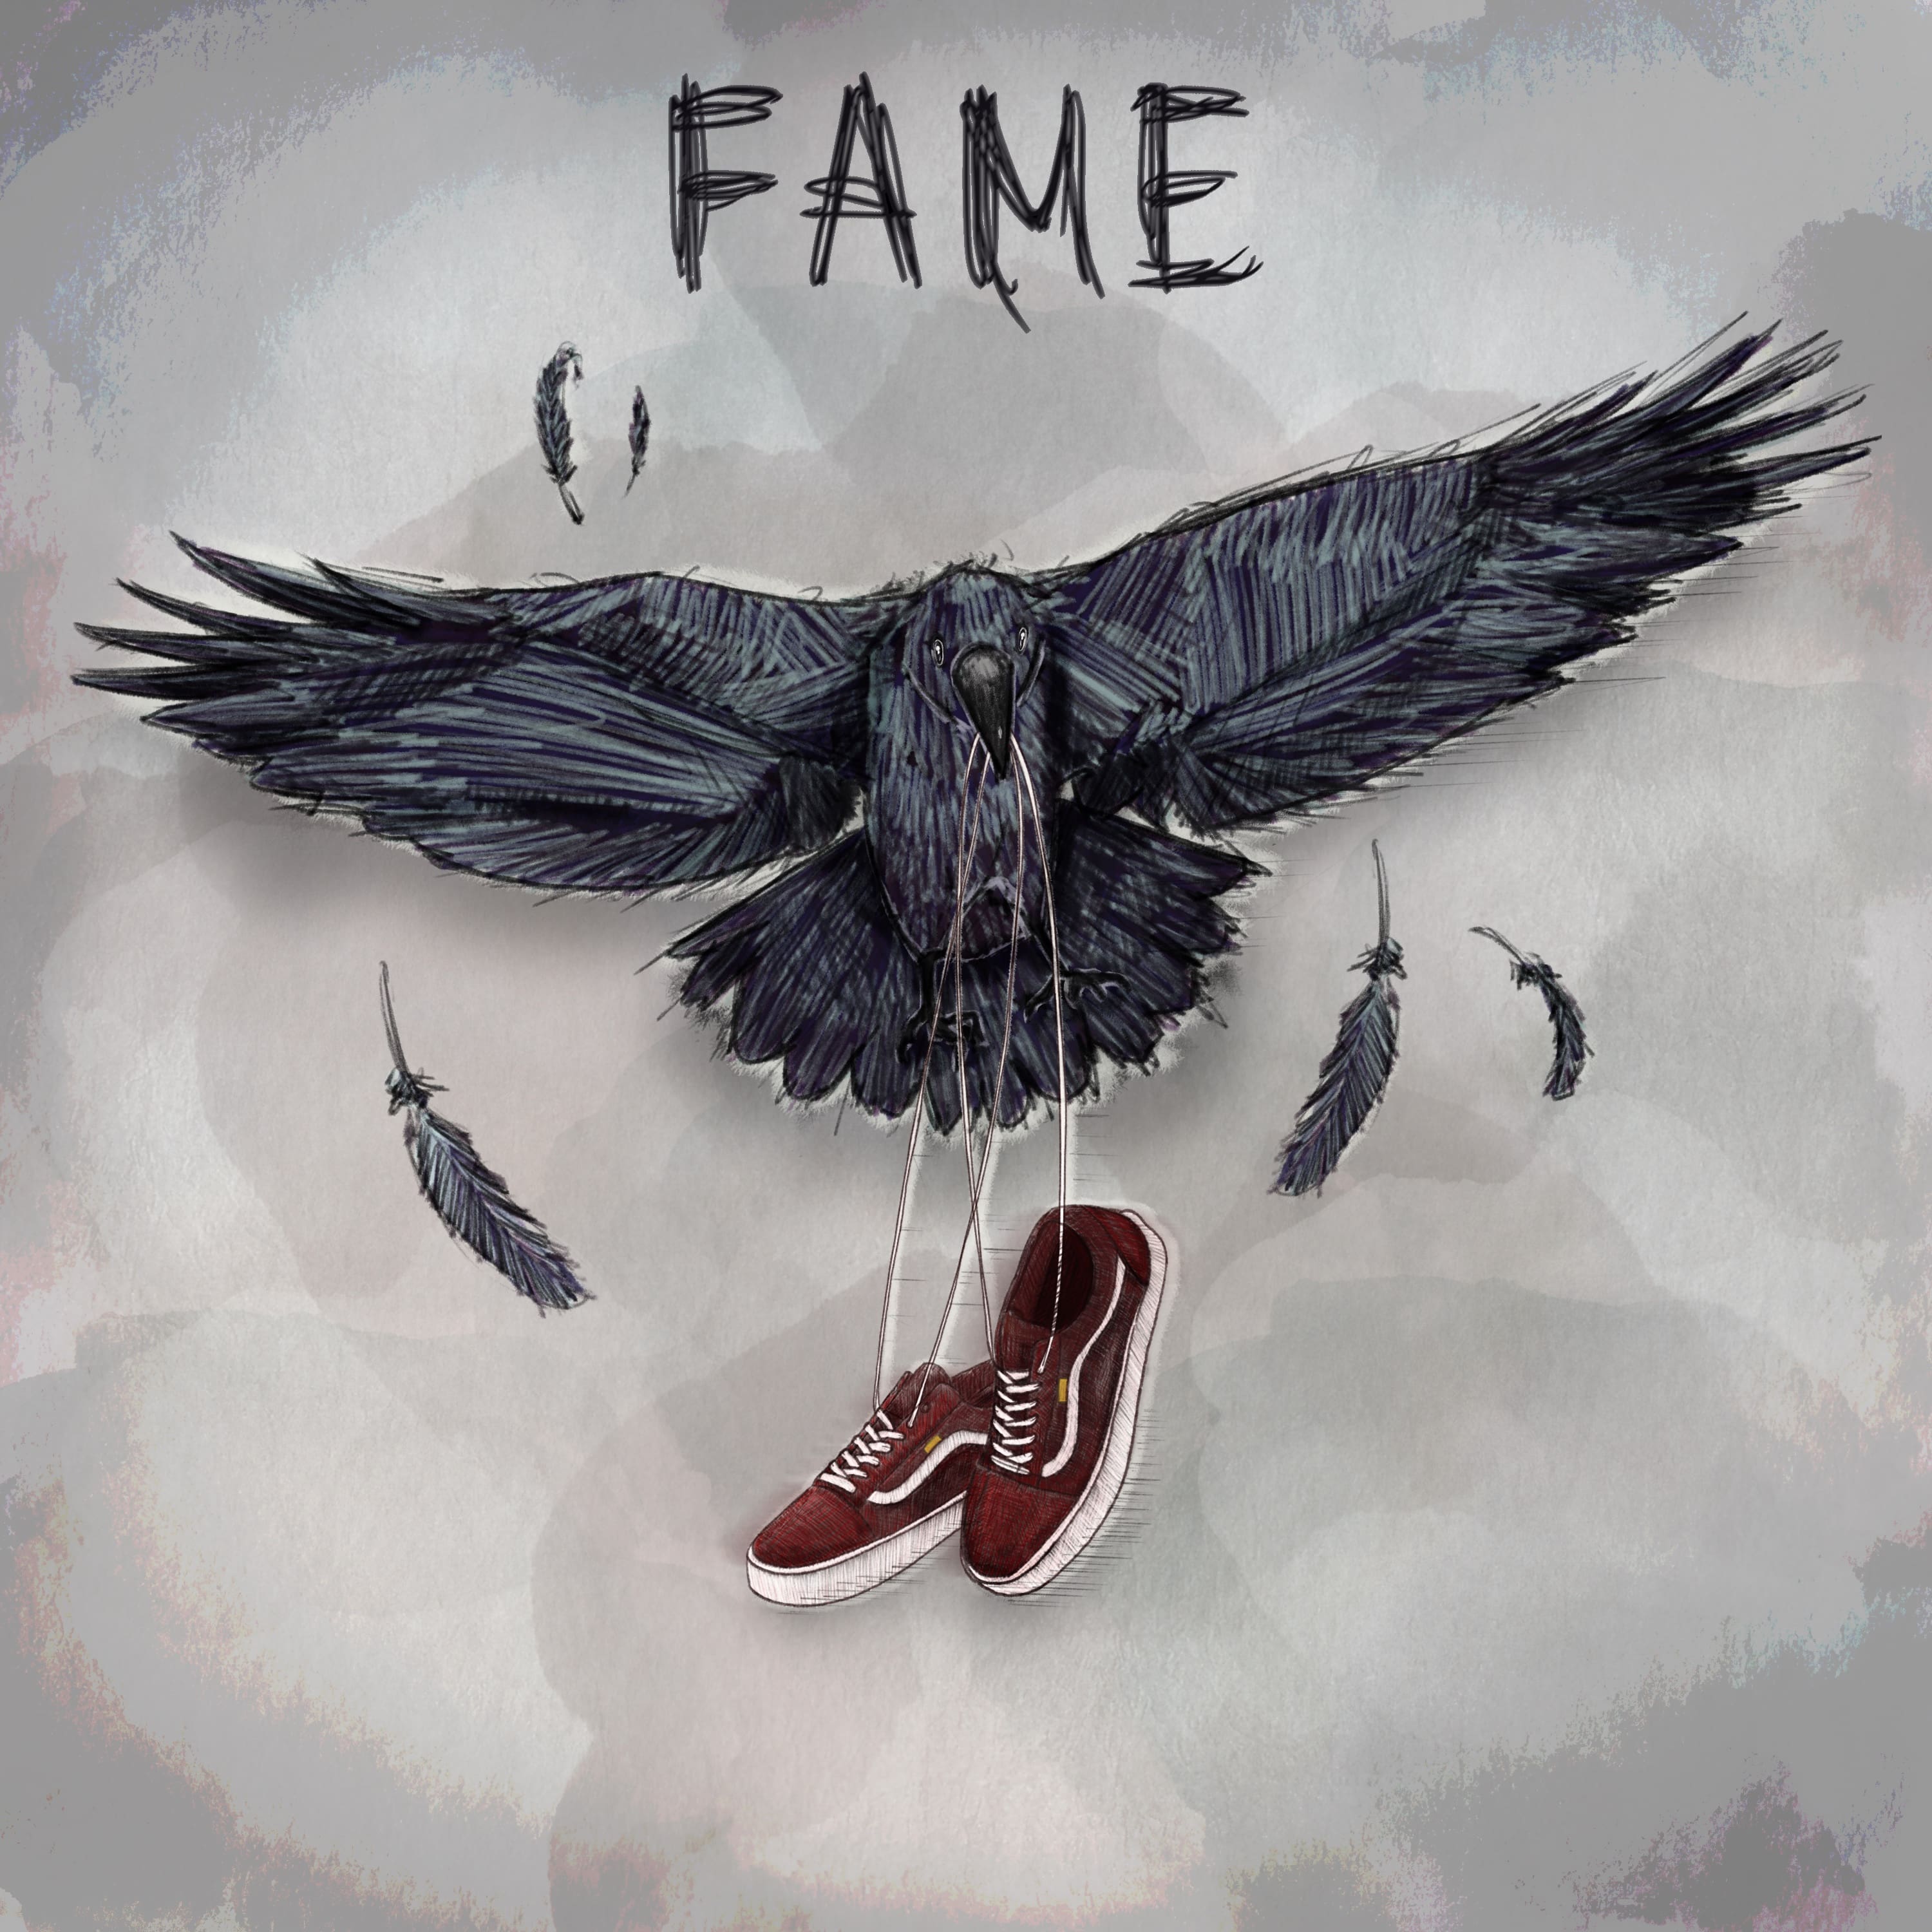 Fame, il nuovo ep degli Urbania [Recensione] 2